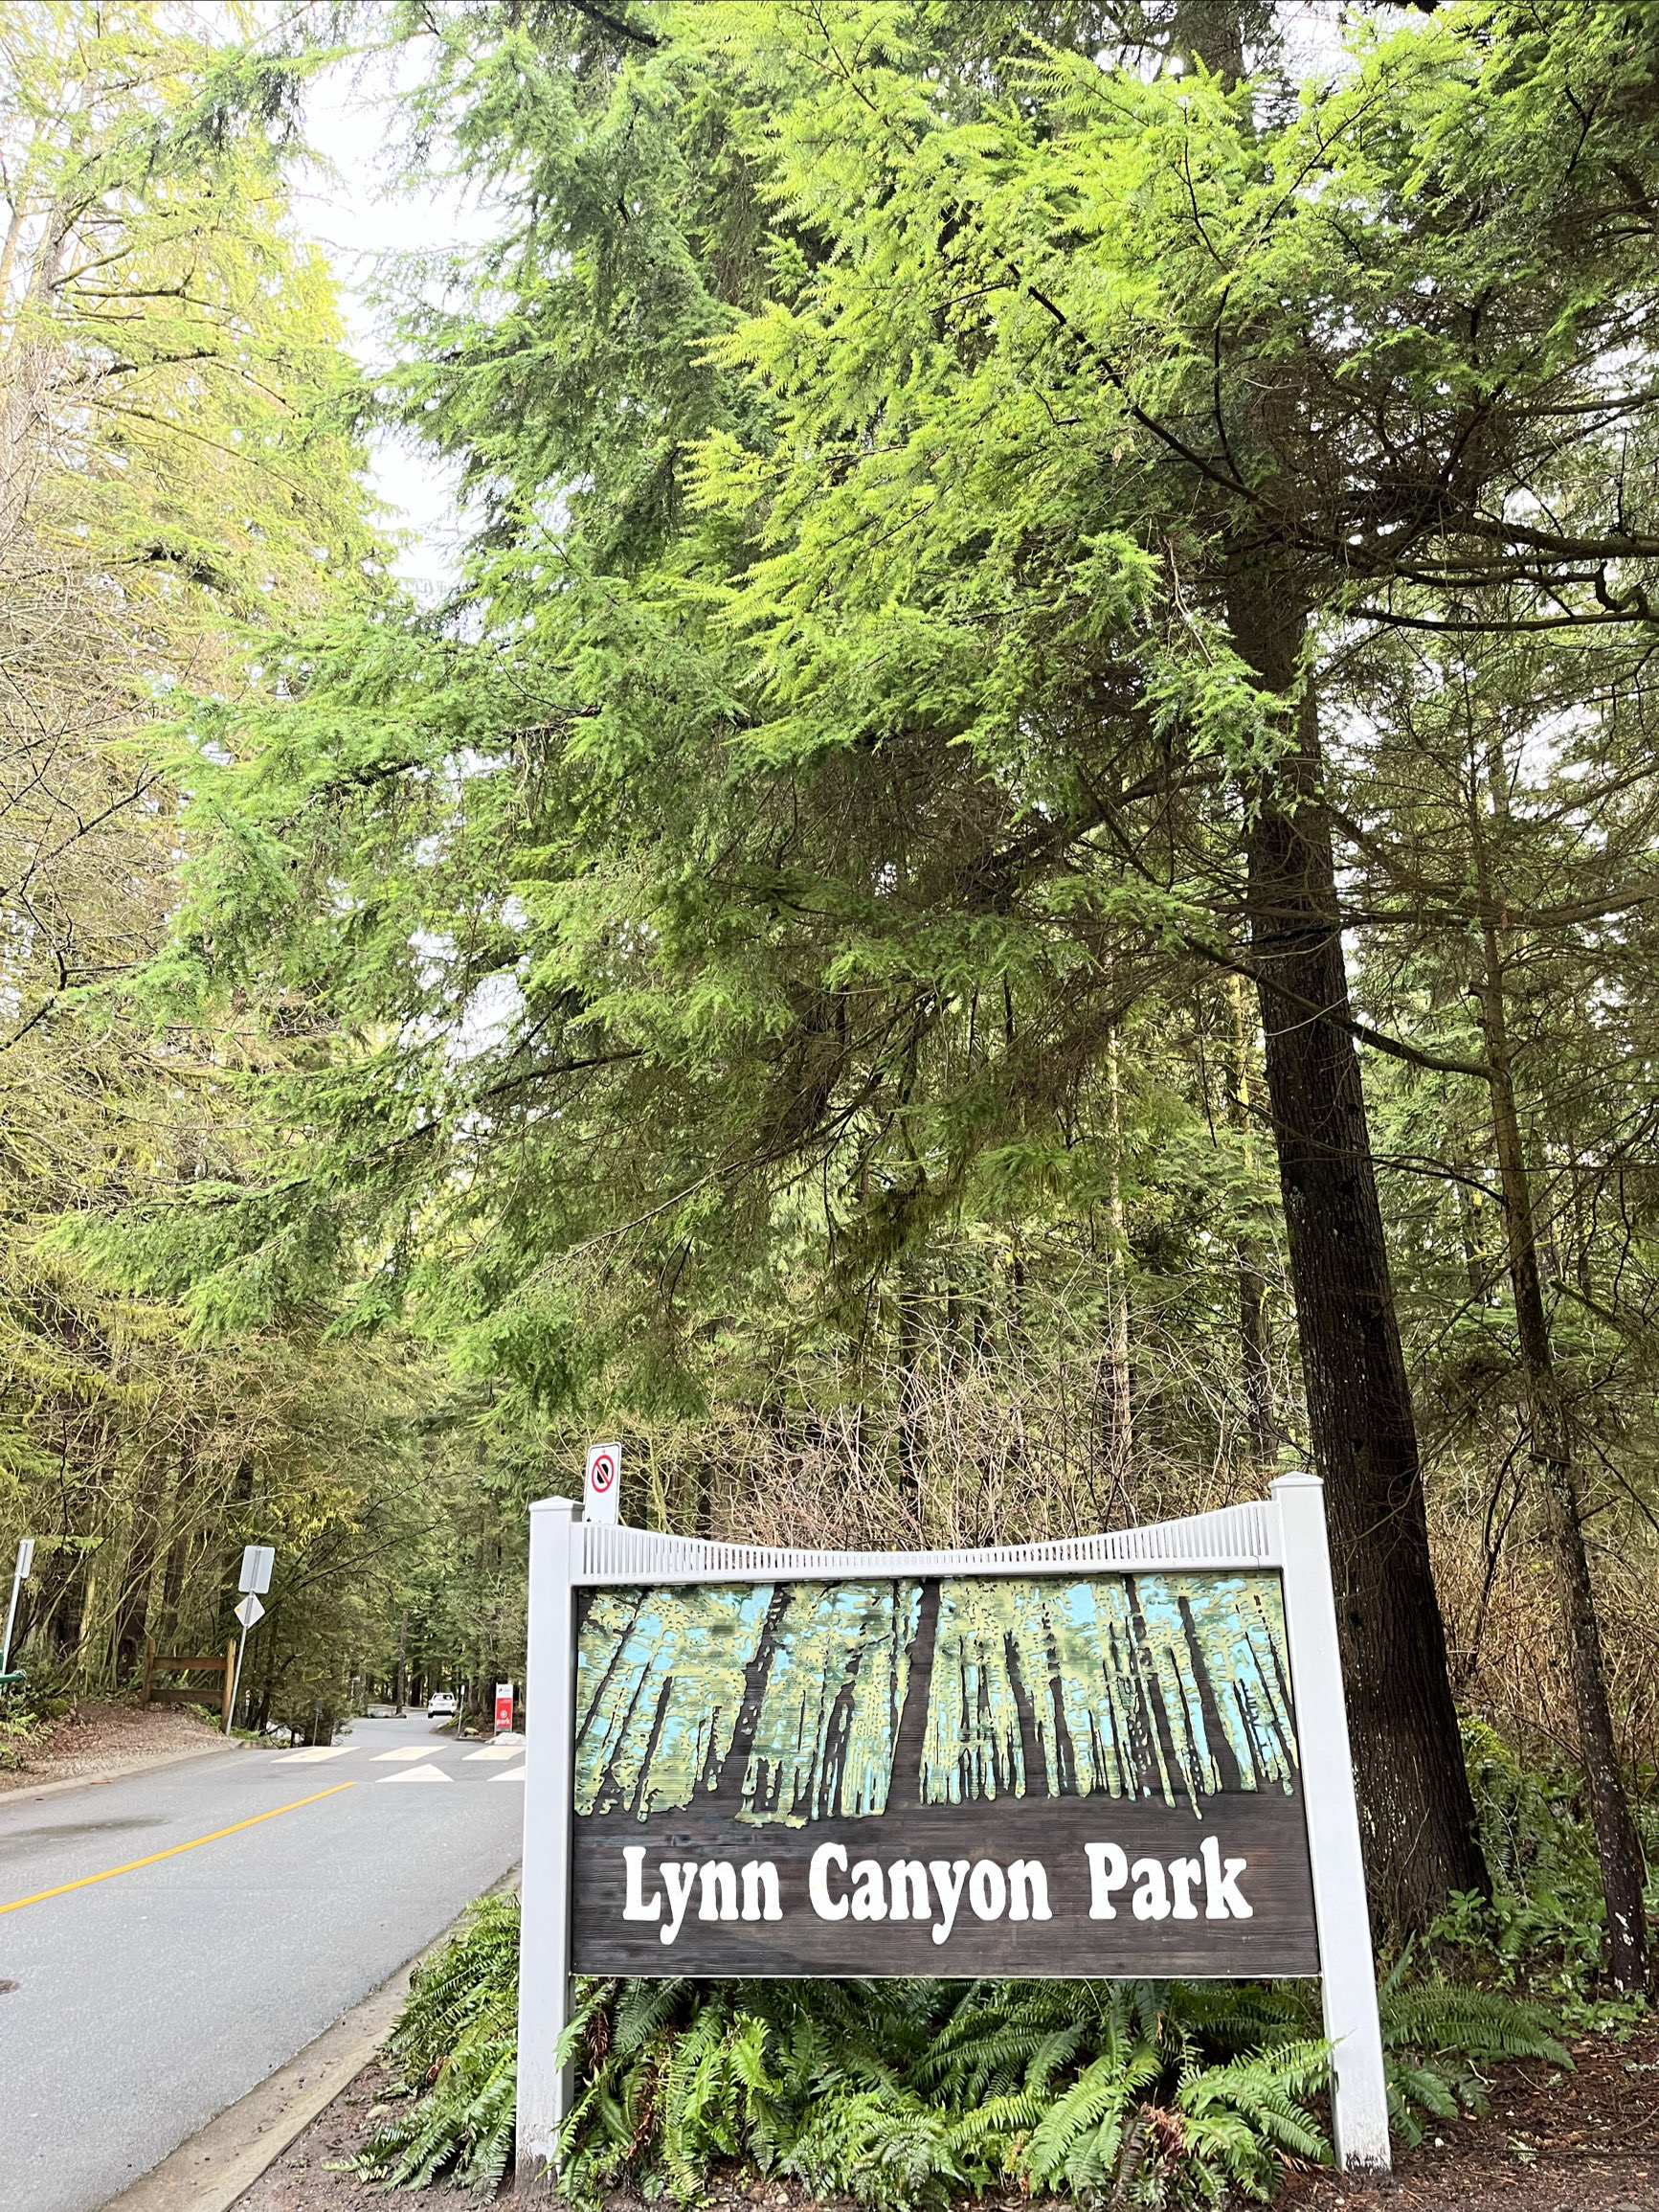 林恩峡谷公园～北温哥华徒步旅游 有停车场、公共交通可以到达 #徒步好旅行 #去了还想去的地方 #休闲